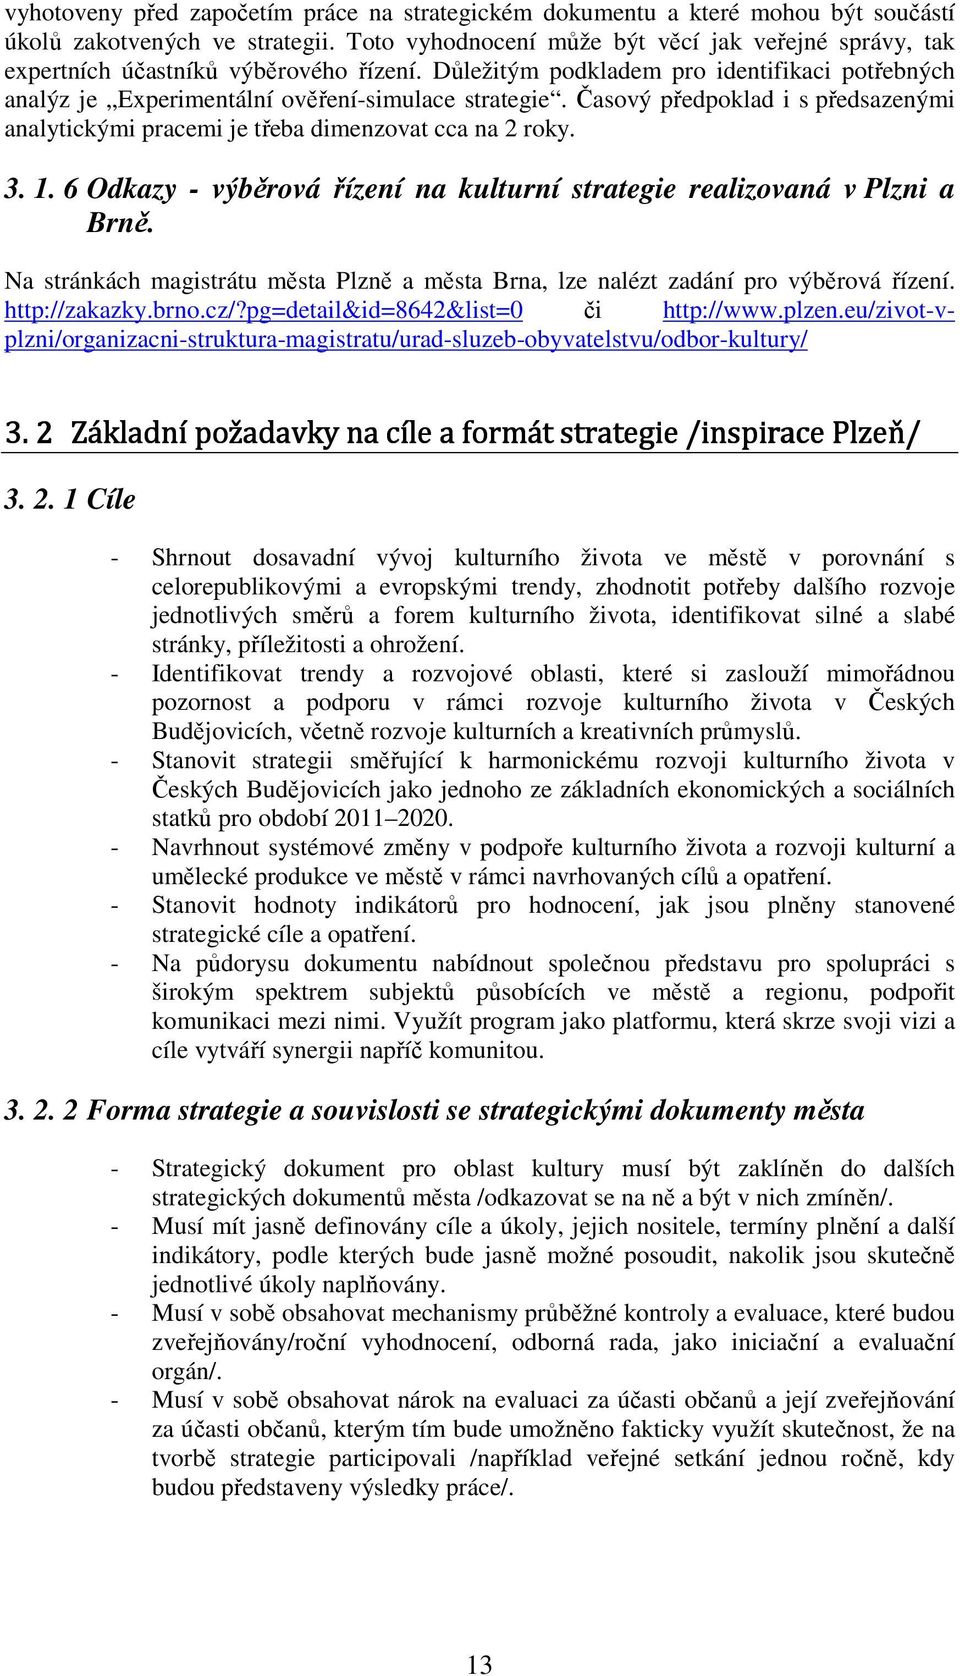 Časový předpoklad i s předsazenými analytickými pracemi je třeba dimenzovat cca na 2 roky. 3. 1. 6 Odkazy - výběrová řízení na kulturní strategie realizovaná v Plzni a Brně.